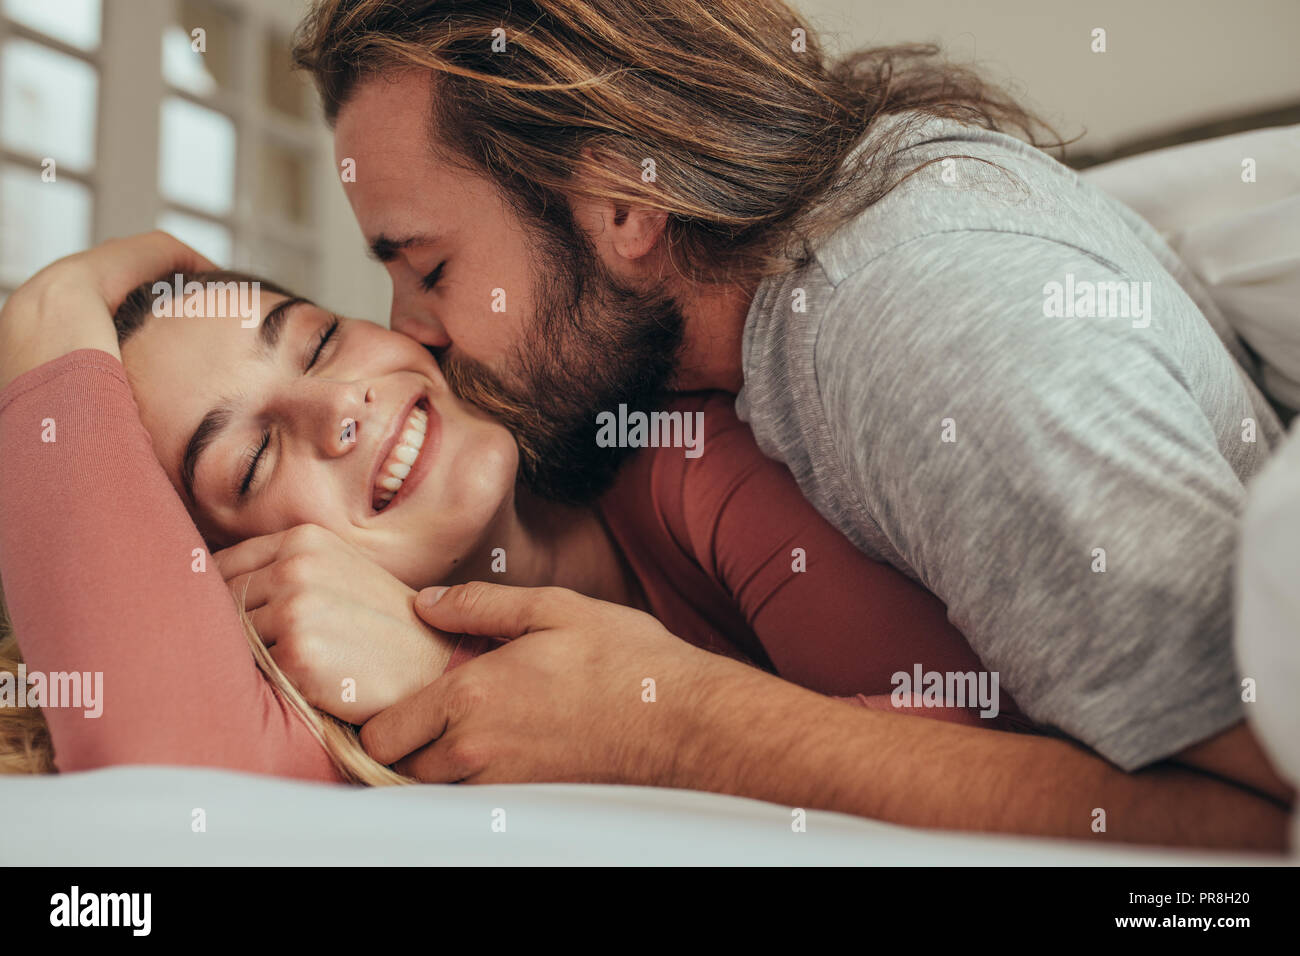 Paar im Bett verbringen die Zeit zusammen mit dem Menschen und seinem Partner. Lächelnde Frau mit geschlossenen Augen, küsste und ihren Mann liebte. Stockfoto